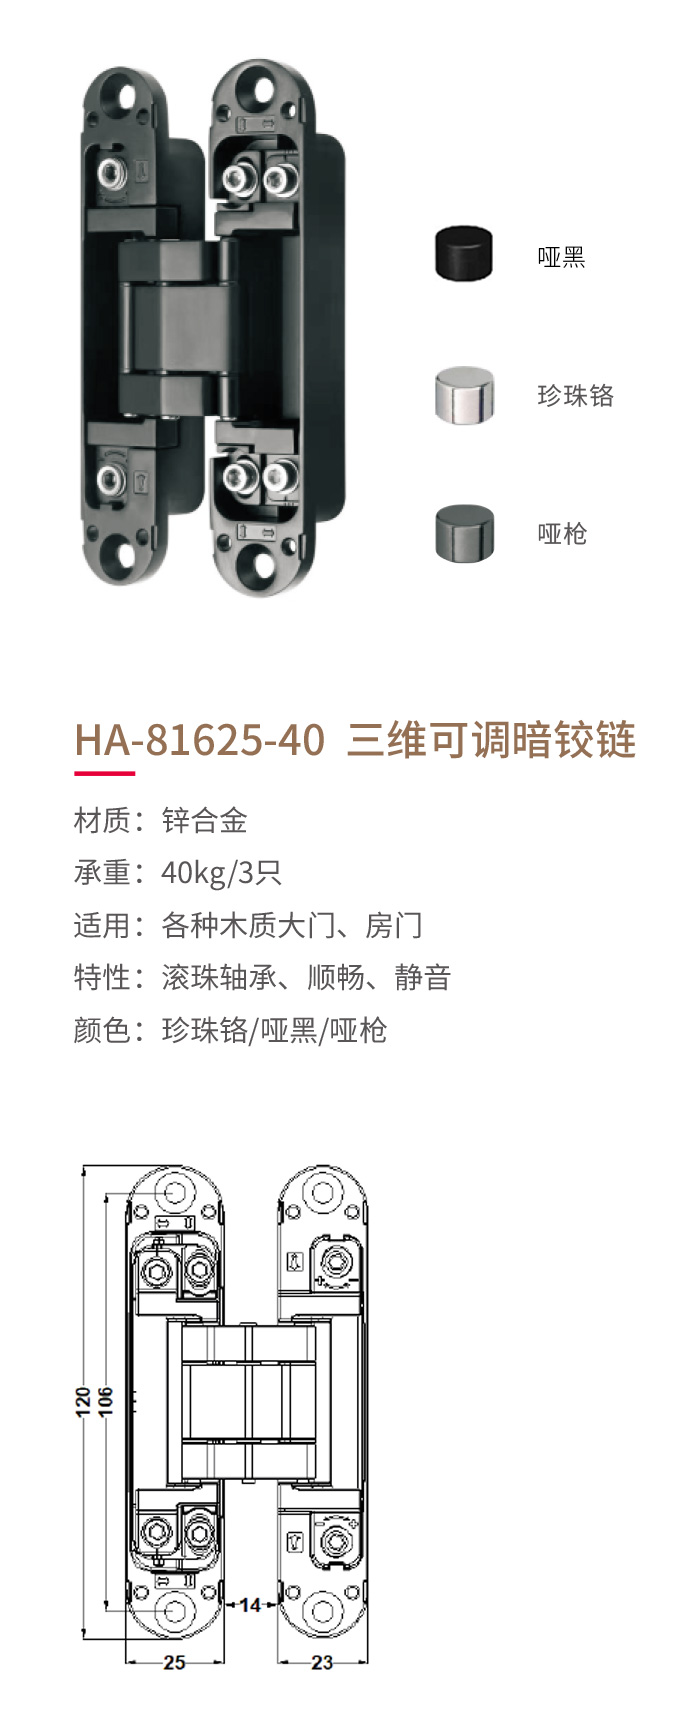 HA-81625-40-三维可调暗铰链-1.jpg